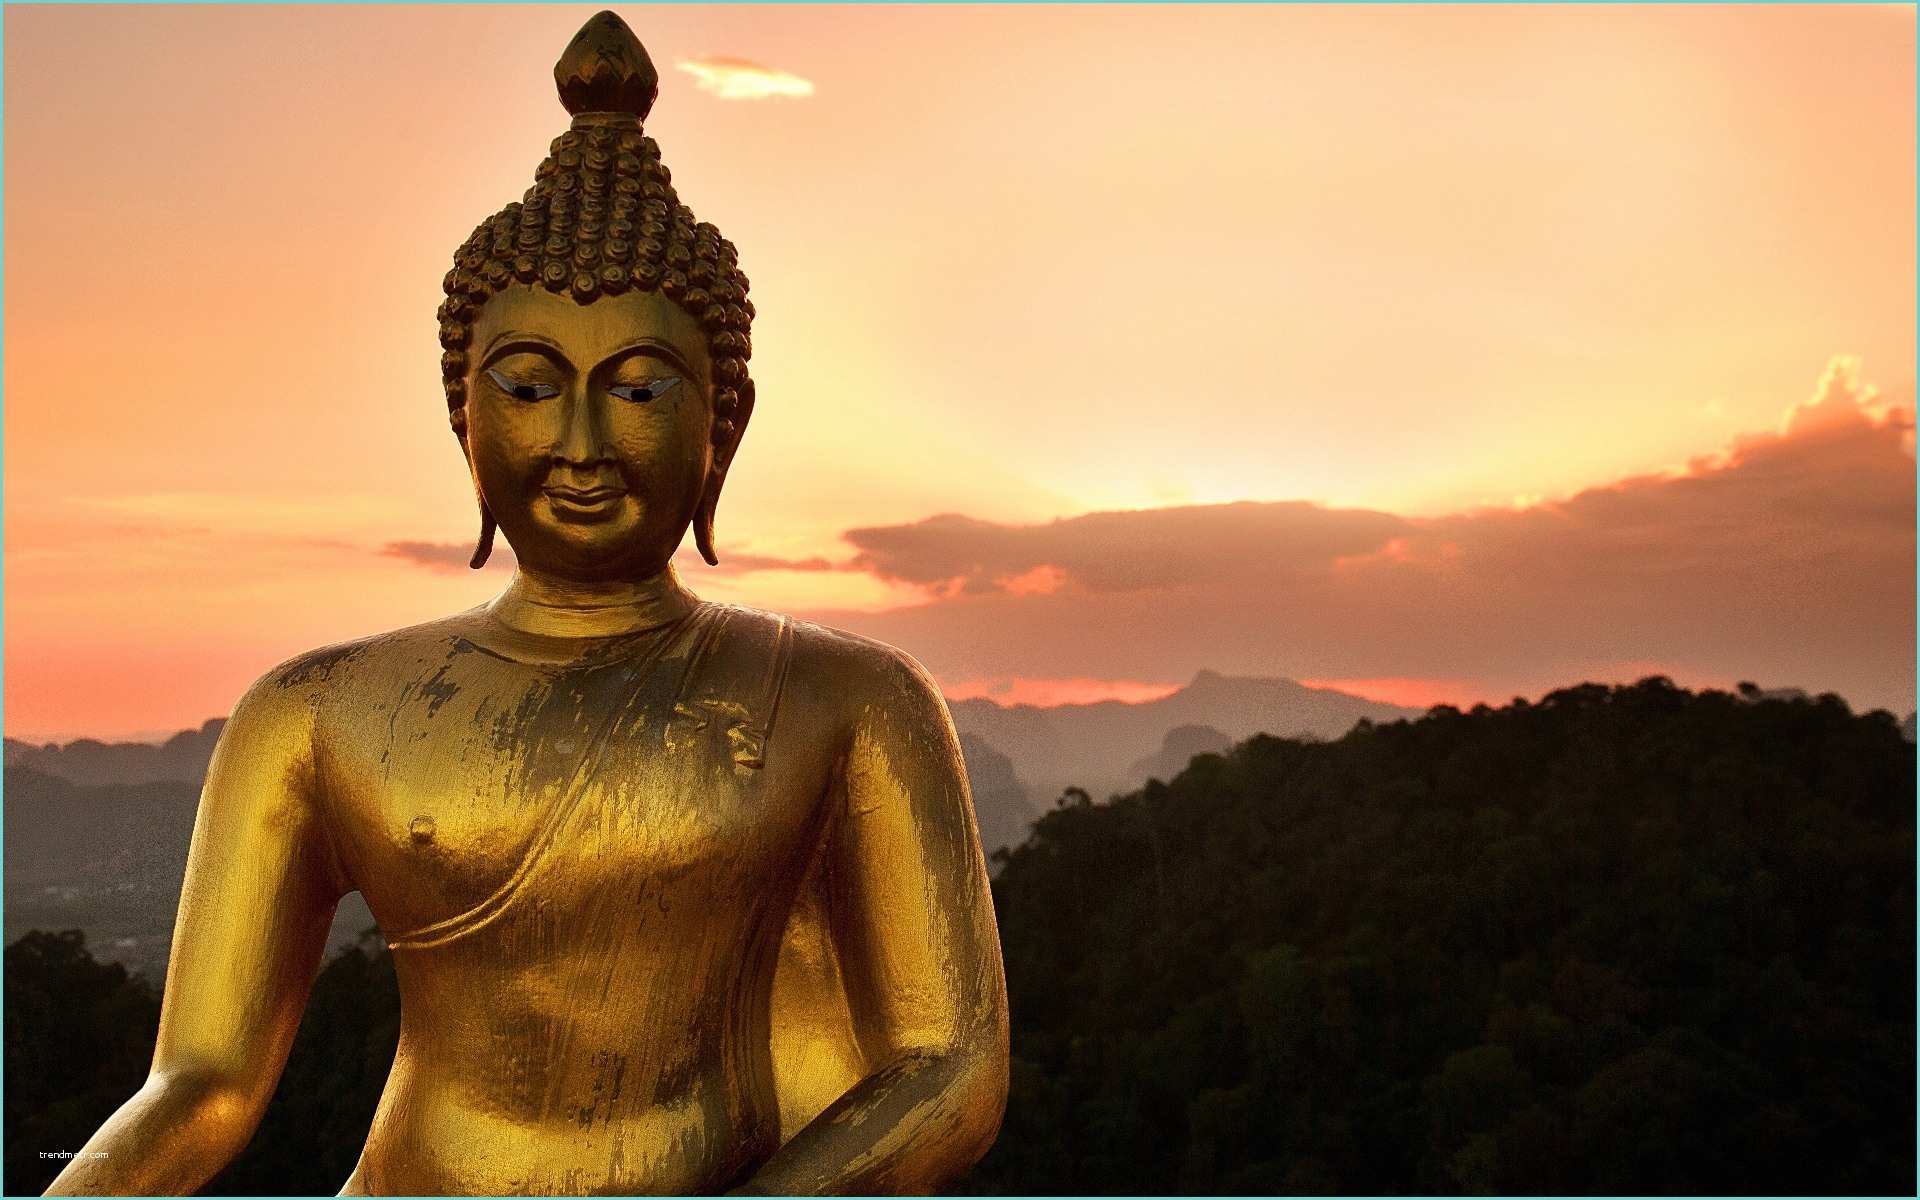 Image Zen Bouddha Buddha – A W E S T R U C K W A N D E R E R